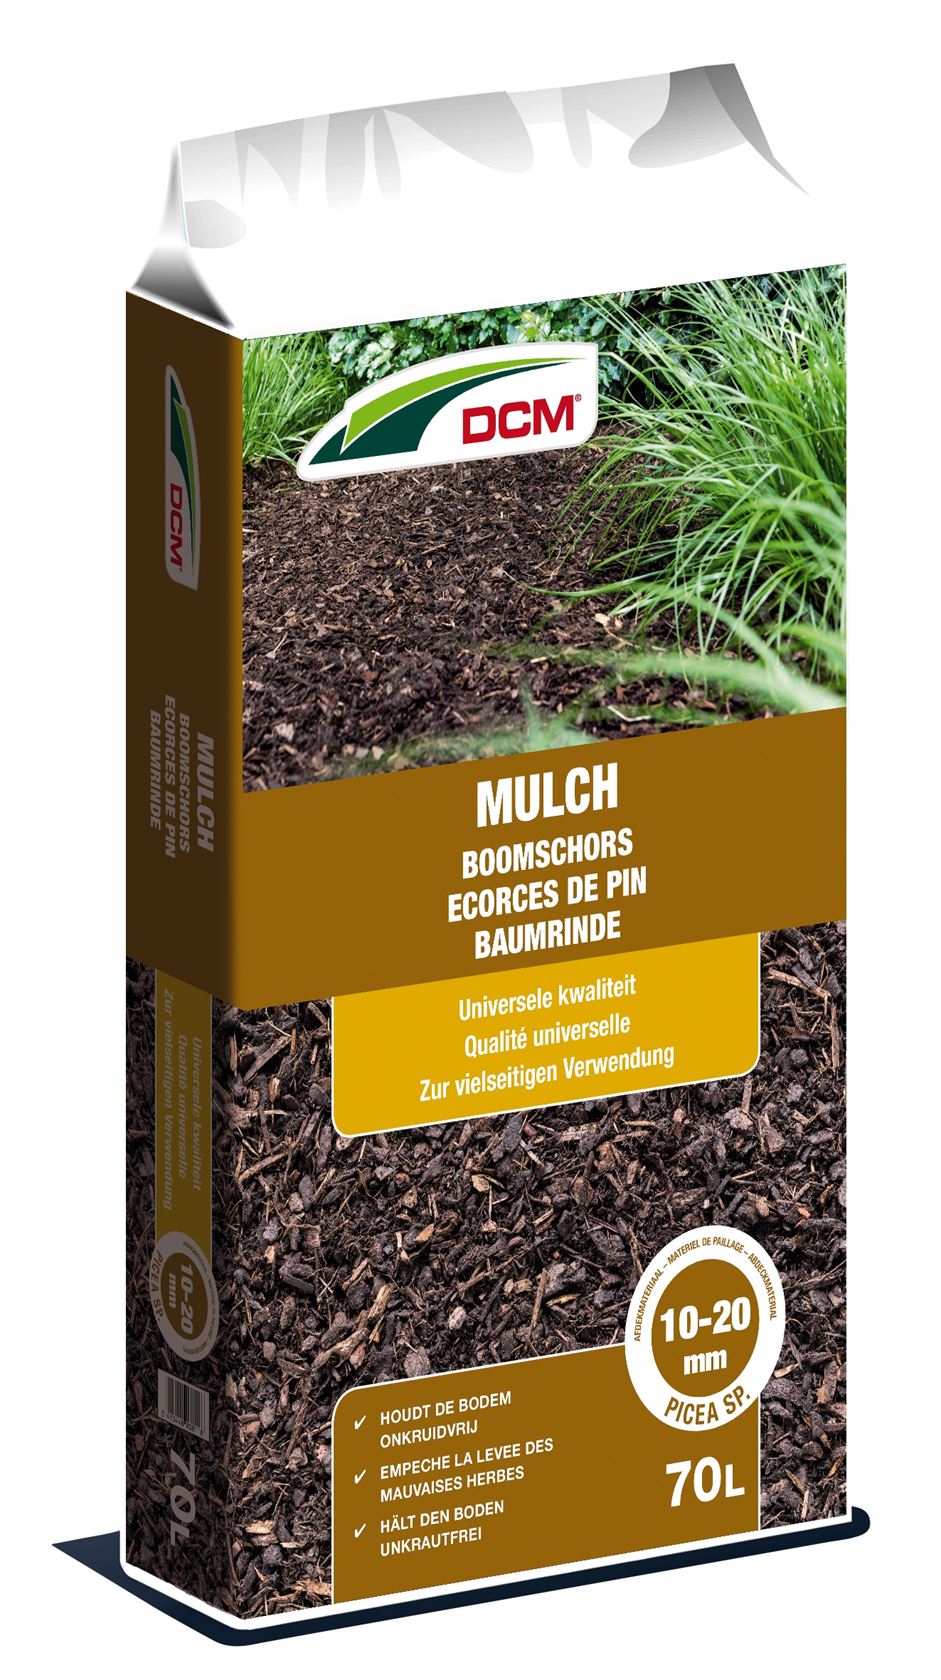 DCM mulch 10-20 mm 70L